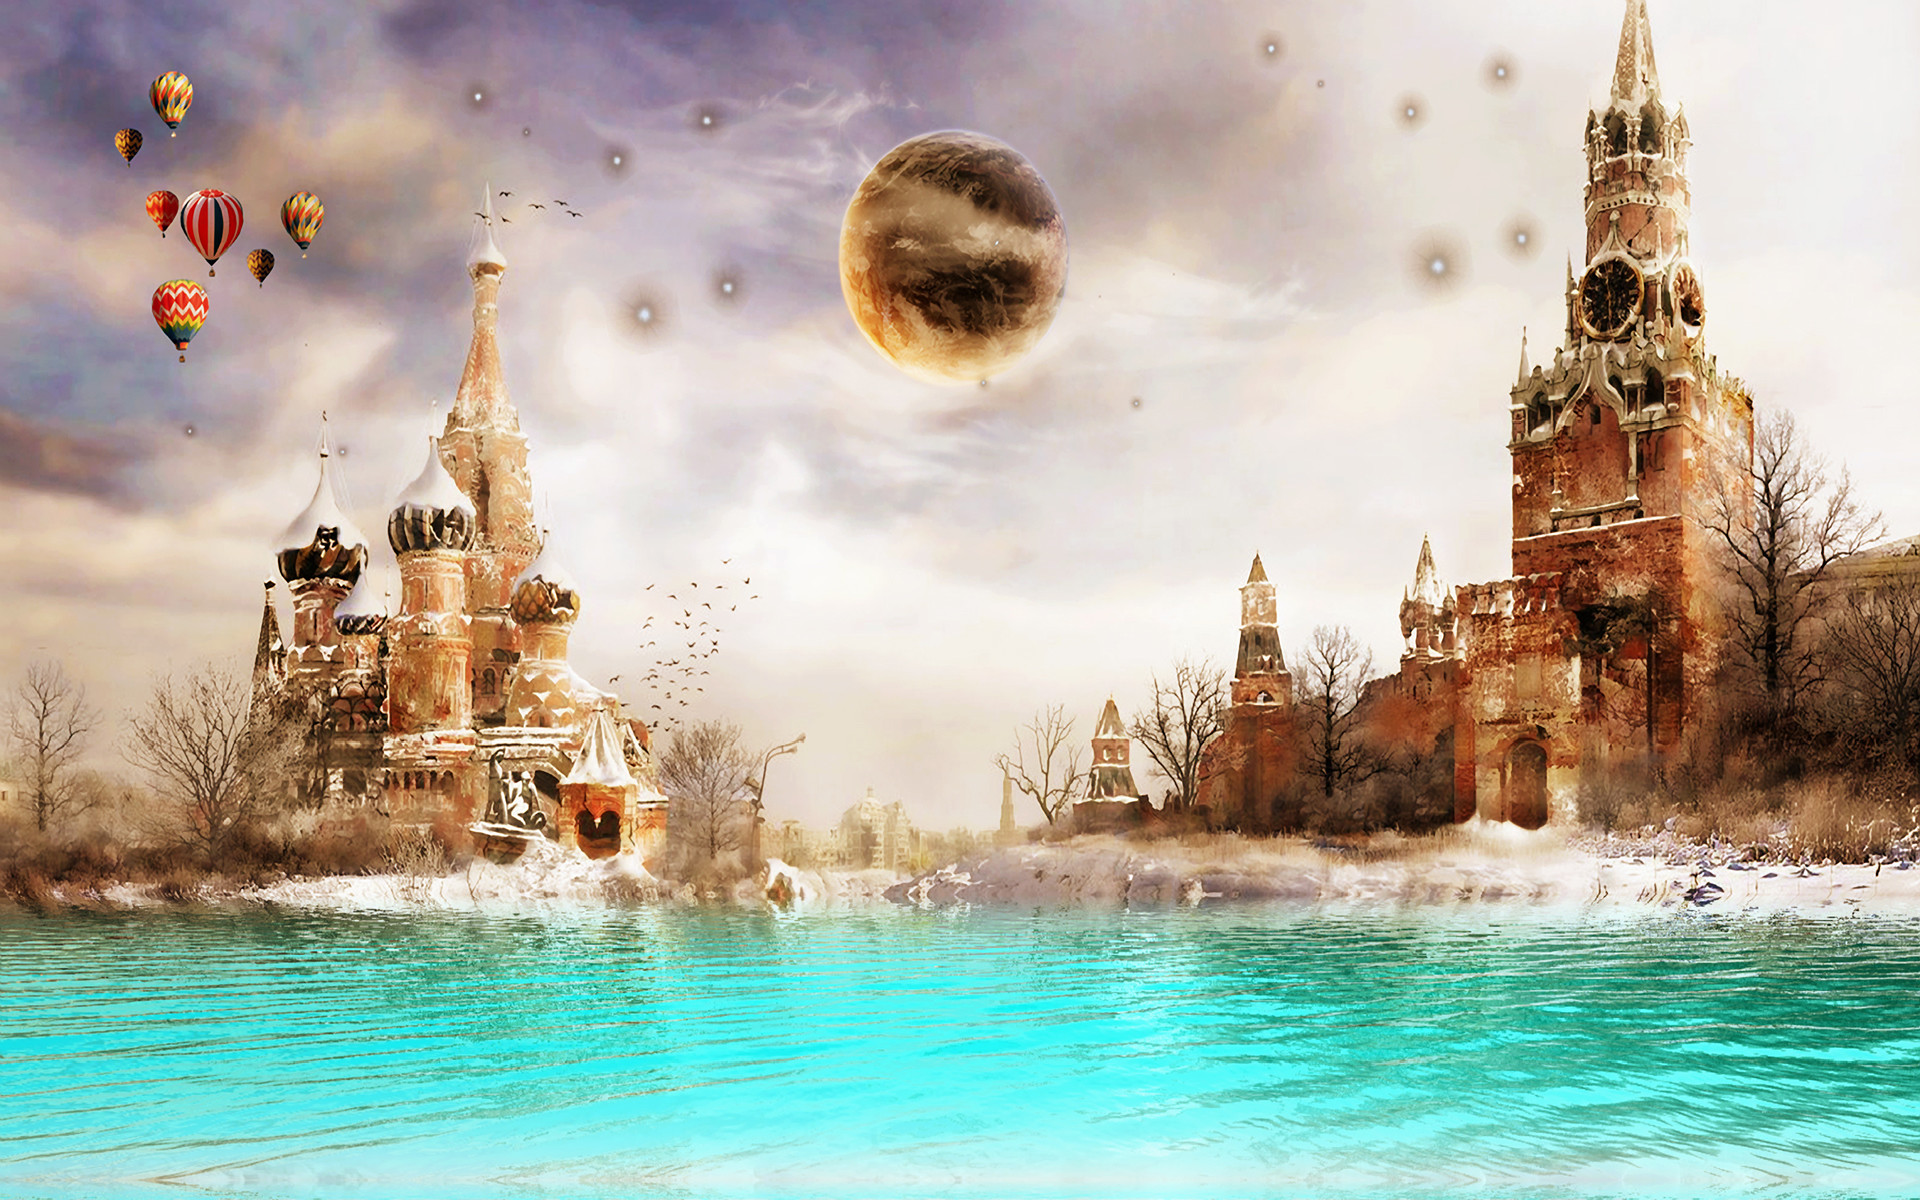 1920x1200 moscow_dreamland-wide.jpg 1,920Ã1,200 pixels | Maybe I'm just a dreamer |  Pinterest | Dream land, Moscow and Hd wallpaper